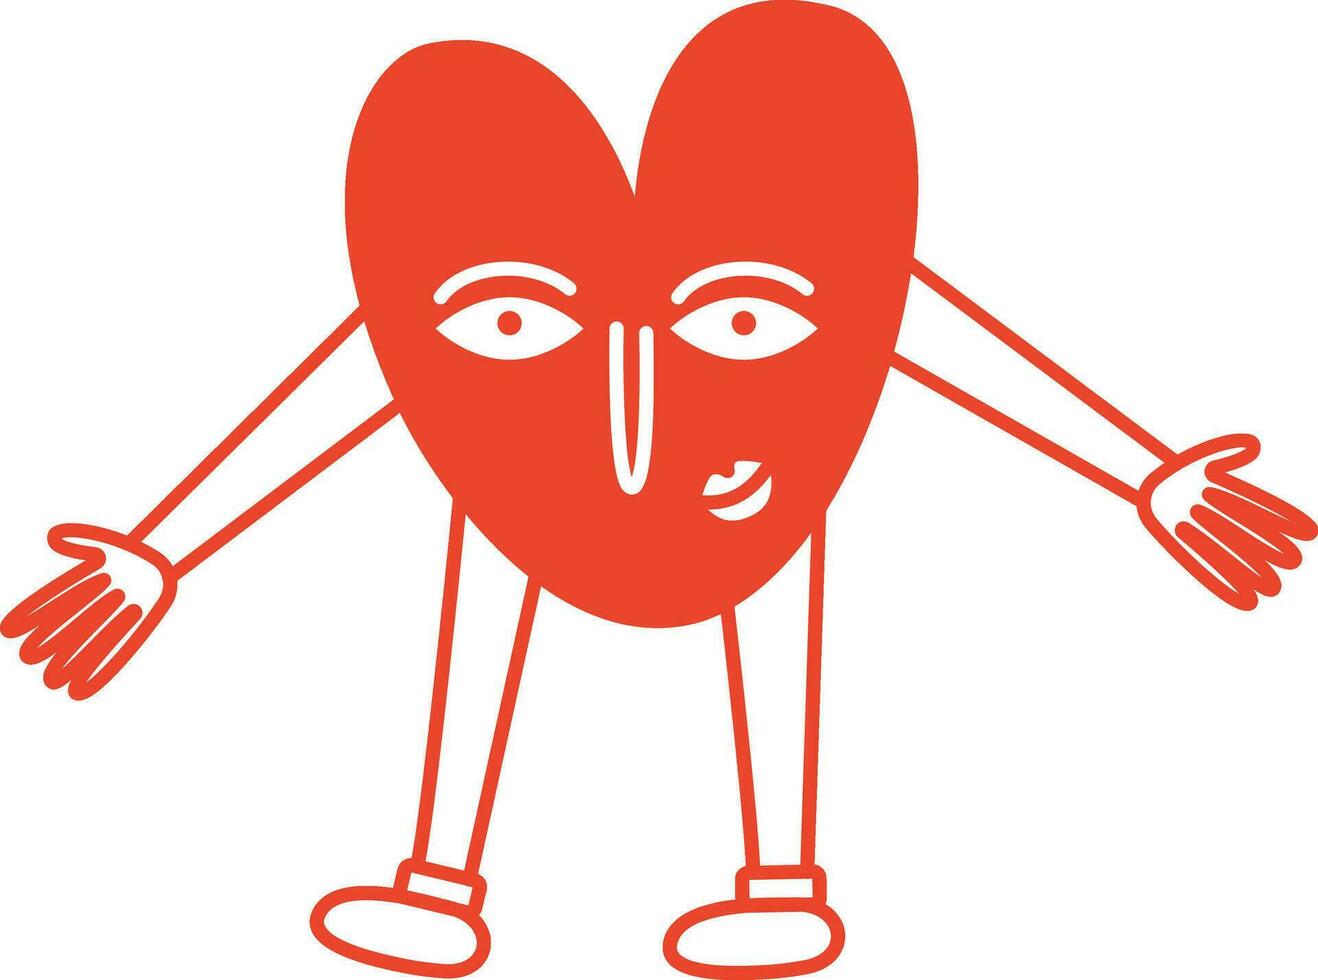 rood grappig retro helder groovy hart, illustratie van speels liefde harten voor valentijnsdag dag in lijn stijl vector